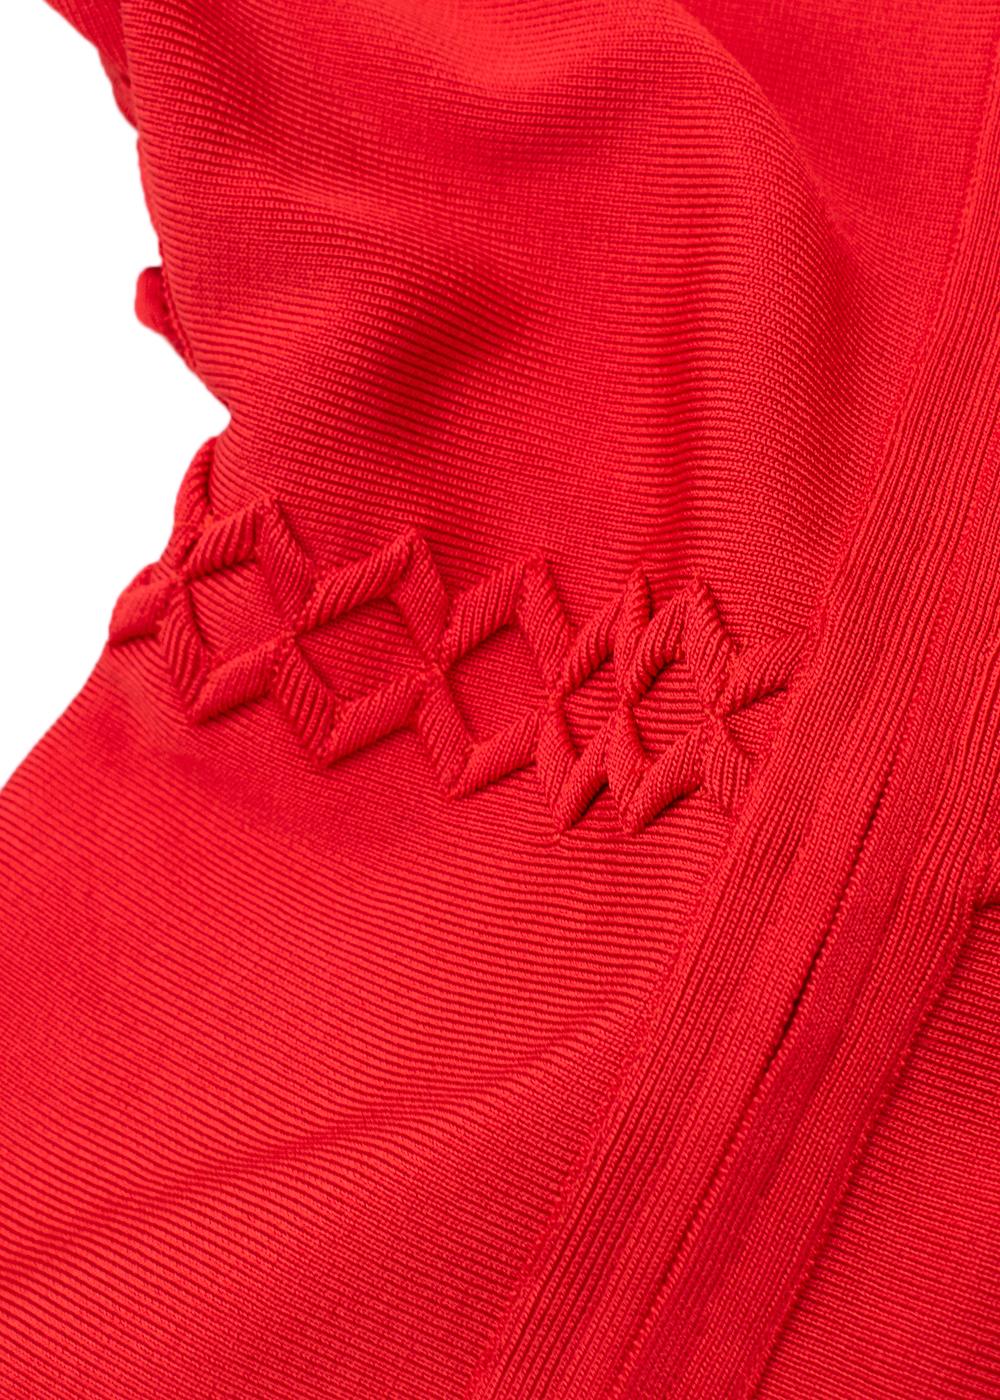 Herve Leger Red Zig-Zag Trim Short Sleeve Bandage Dress For Sale 3